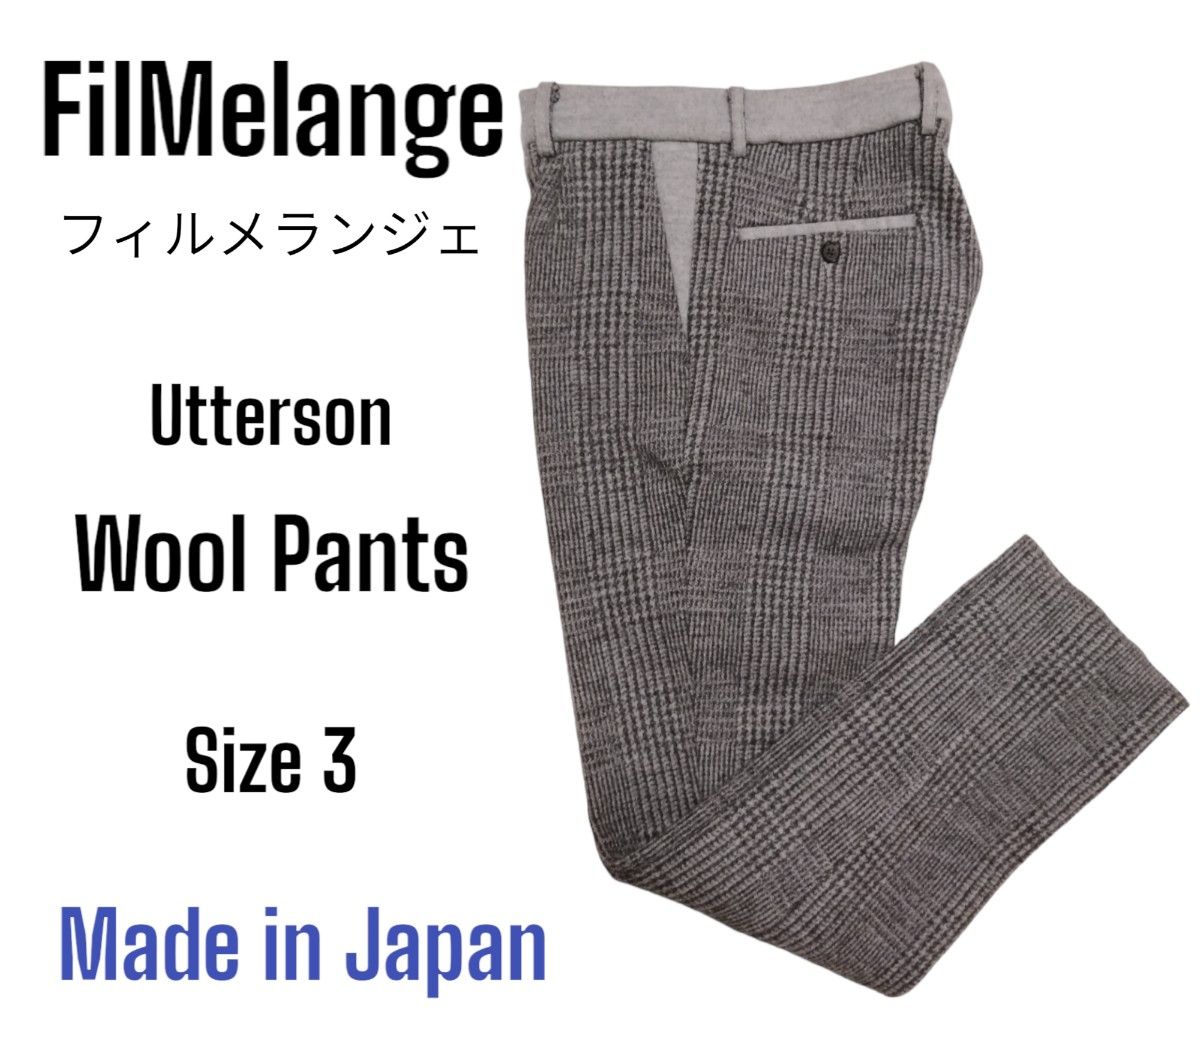 FilMelange Utterson 極厚 日本製 ウールパンツ サイズ3 フィルメランジェ